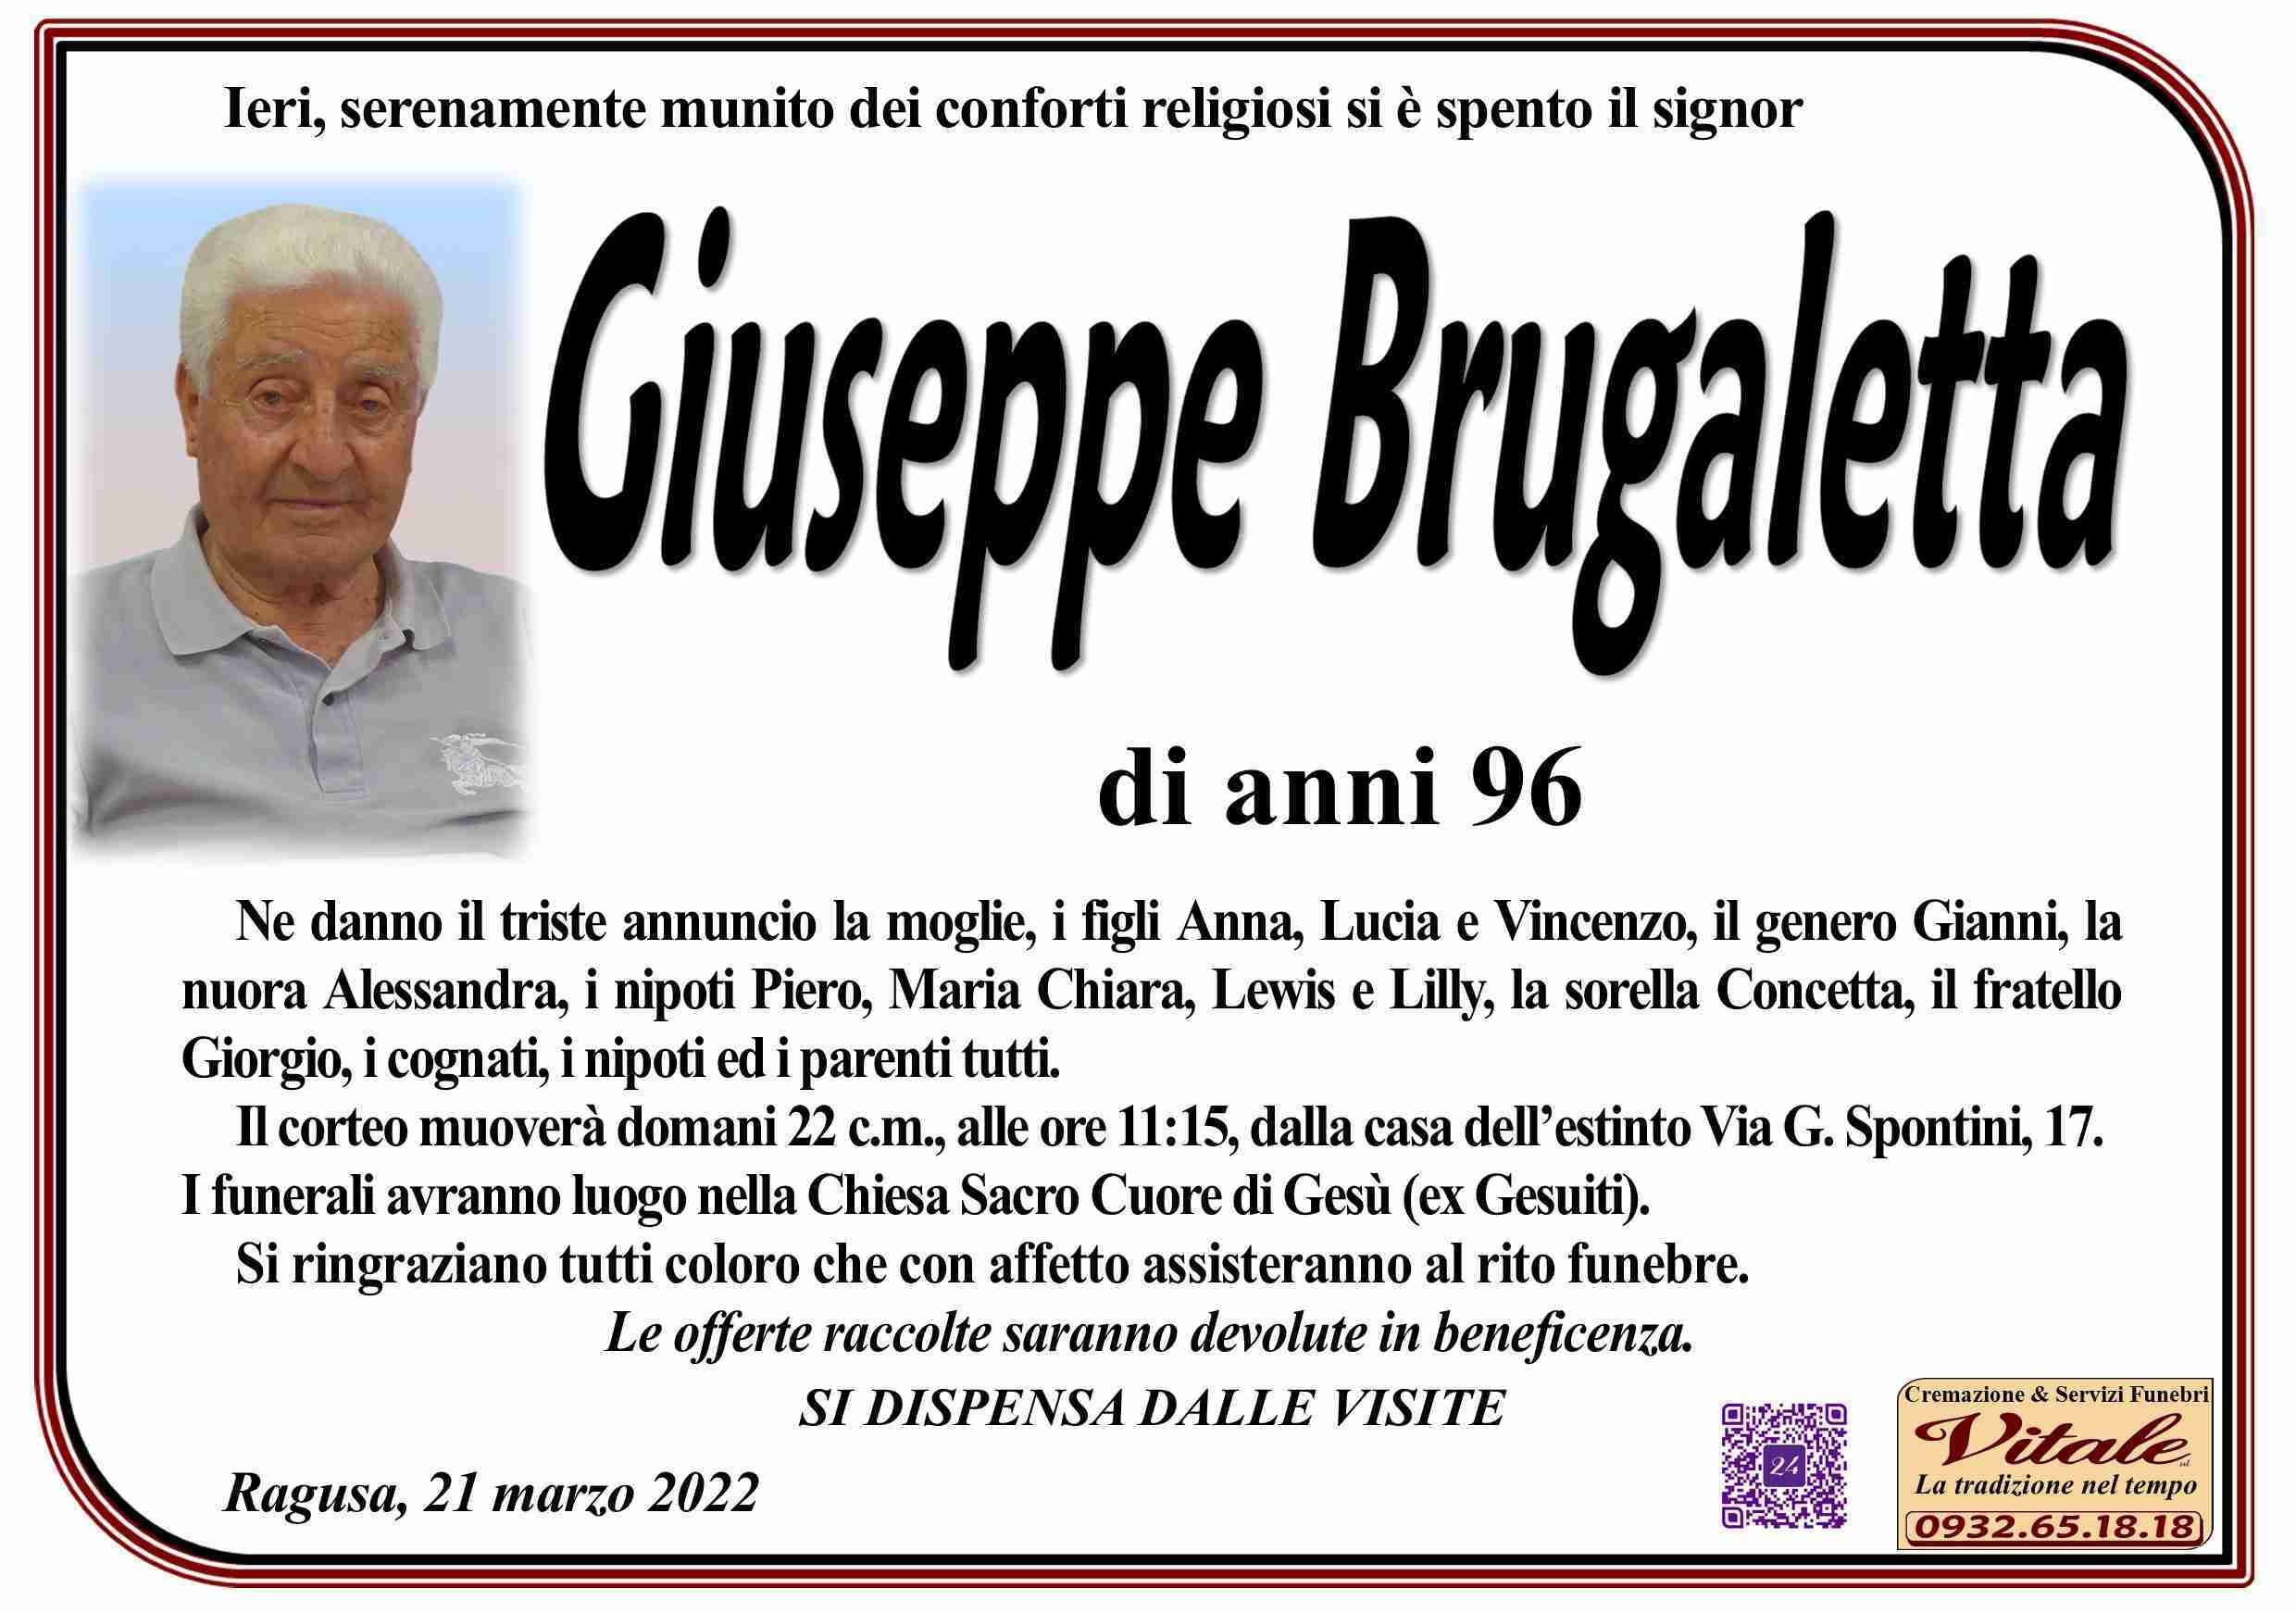 Giuseppe Brugaletta